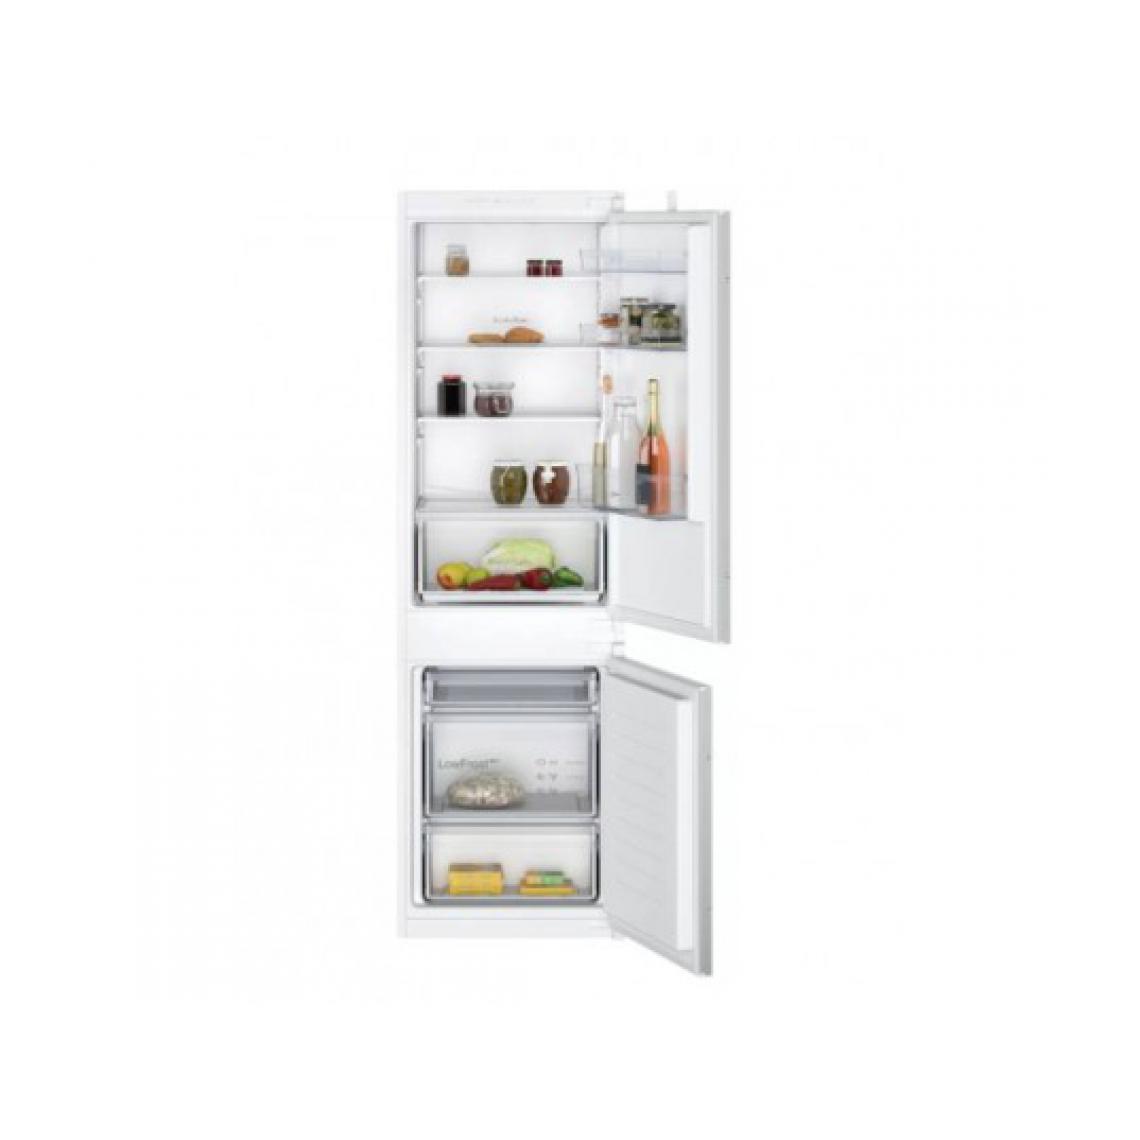 Montre Neff - Réfrigérateur congélateur encastrable KI5861SF0 - Réfrigérateur